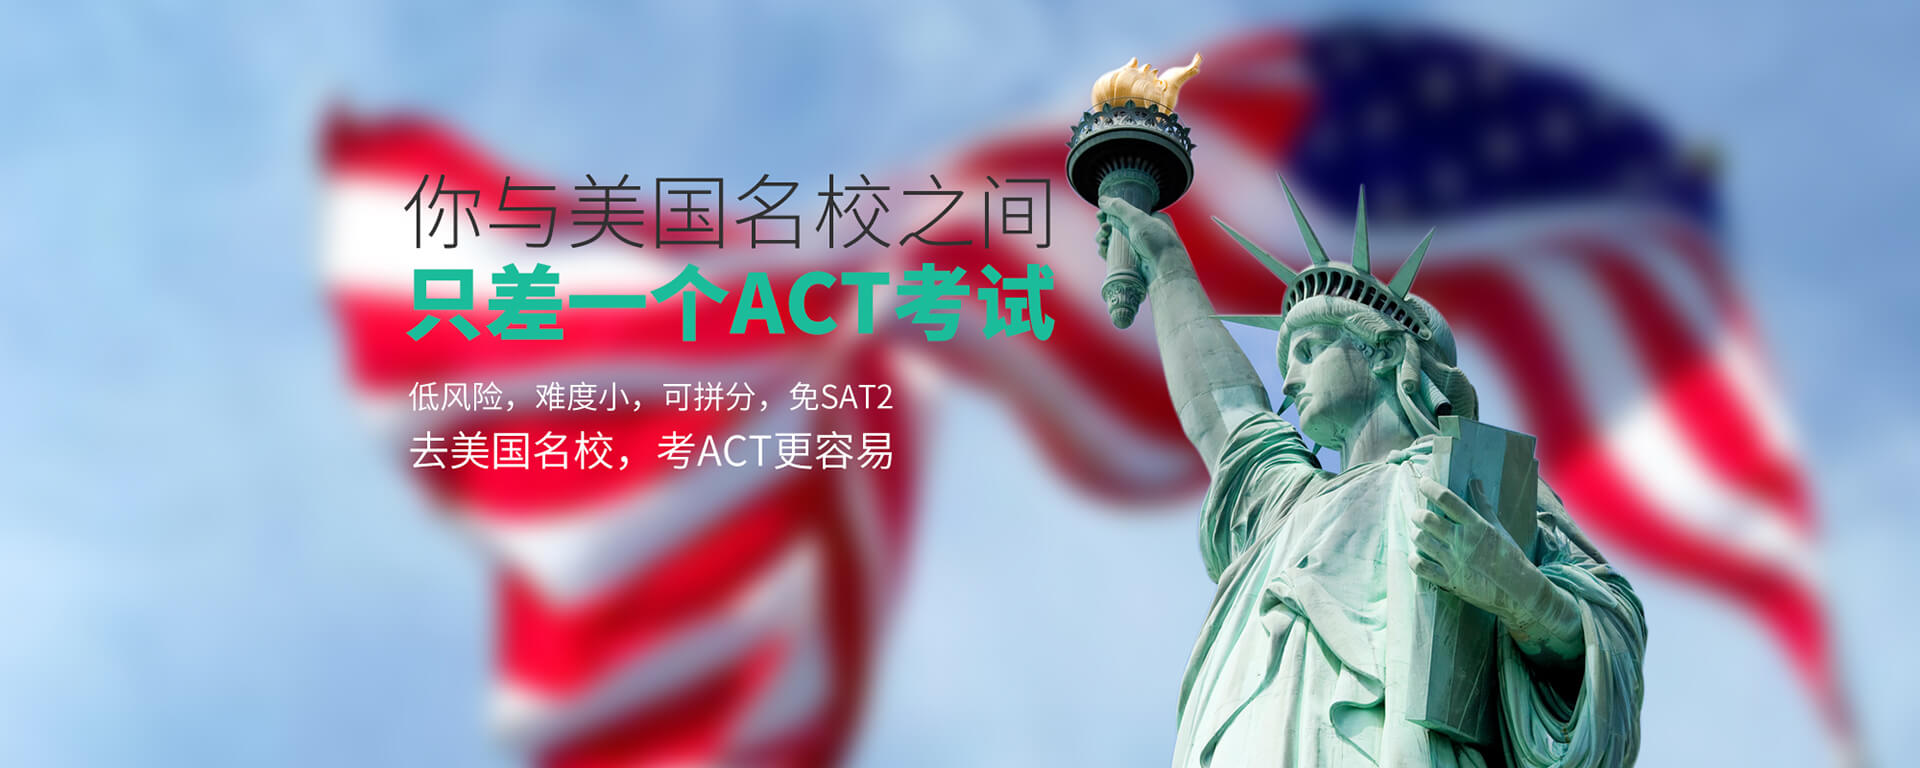 深圳美联ACT英语课程